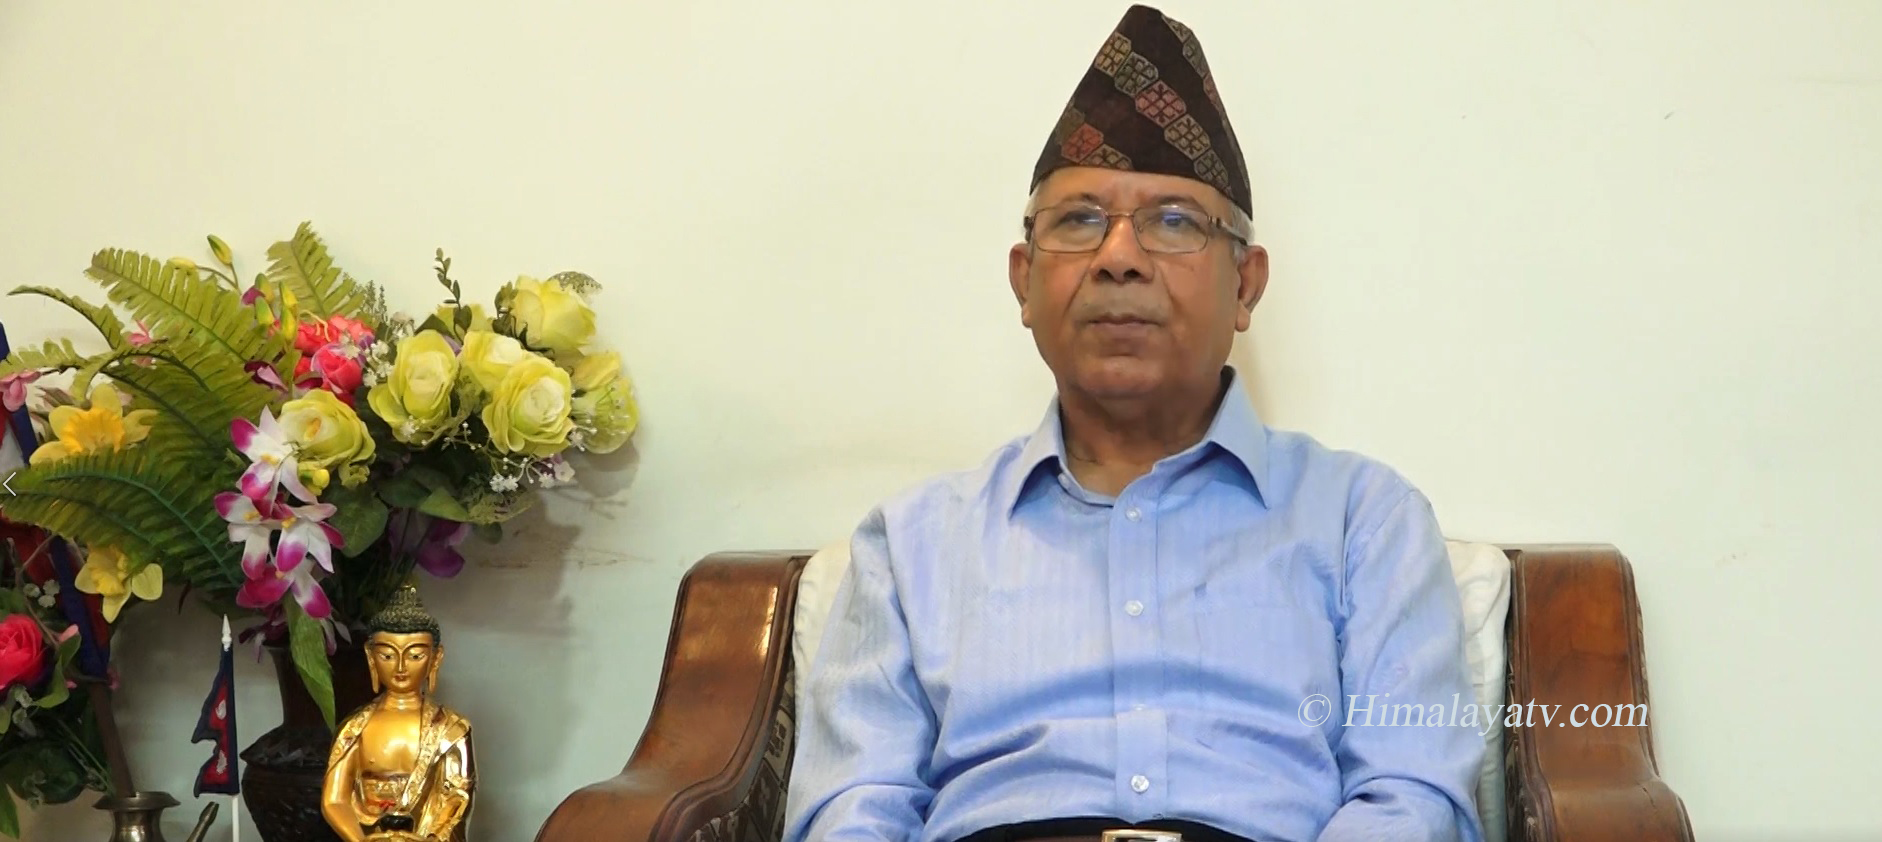 विधान, नीति र सिद्धान्त आत्मसात गरे सबै समस्या समाधान हुन्छः नेता नेपाल